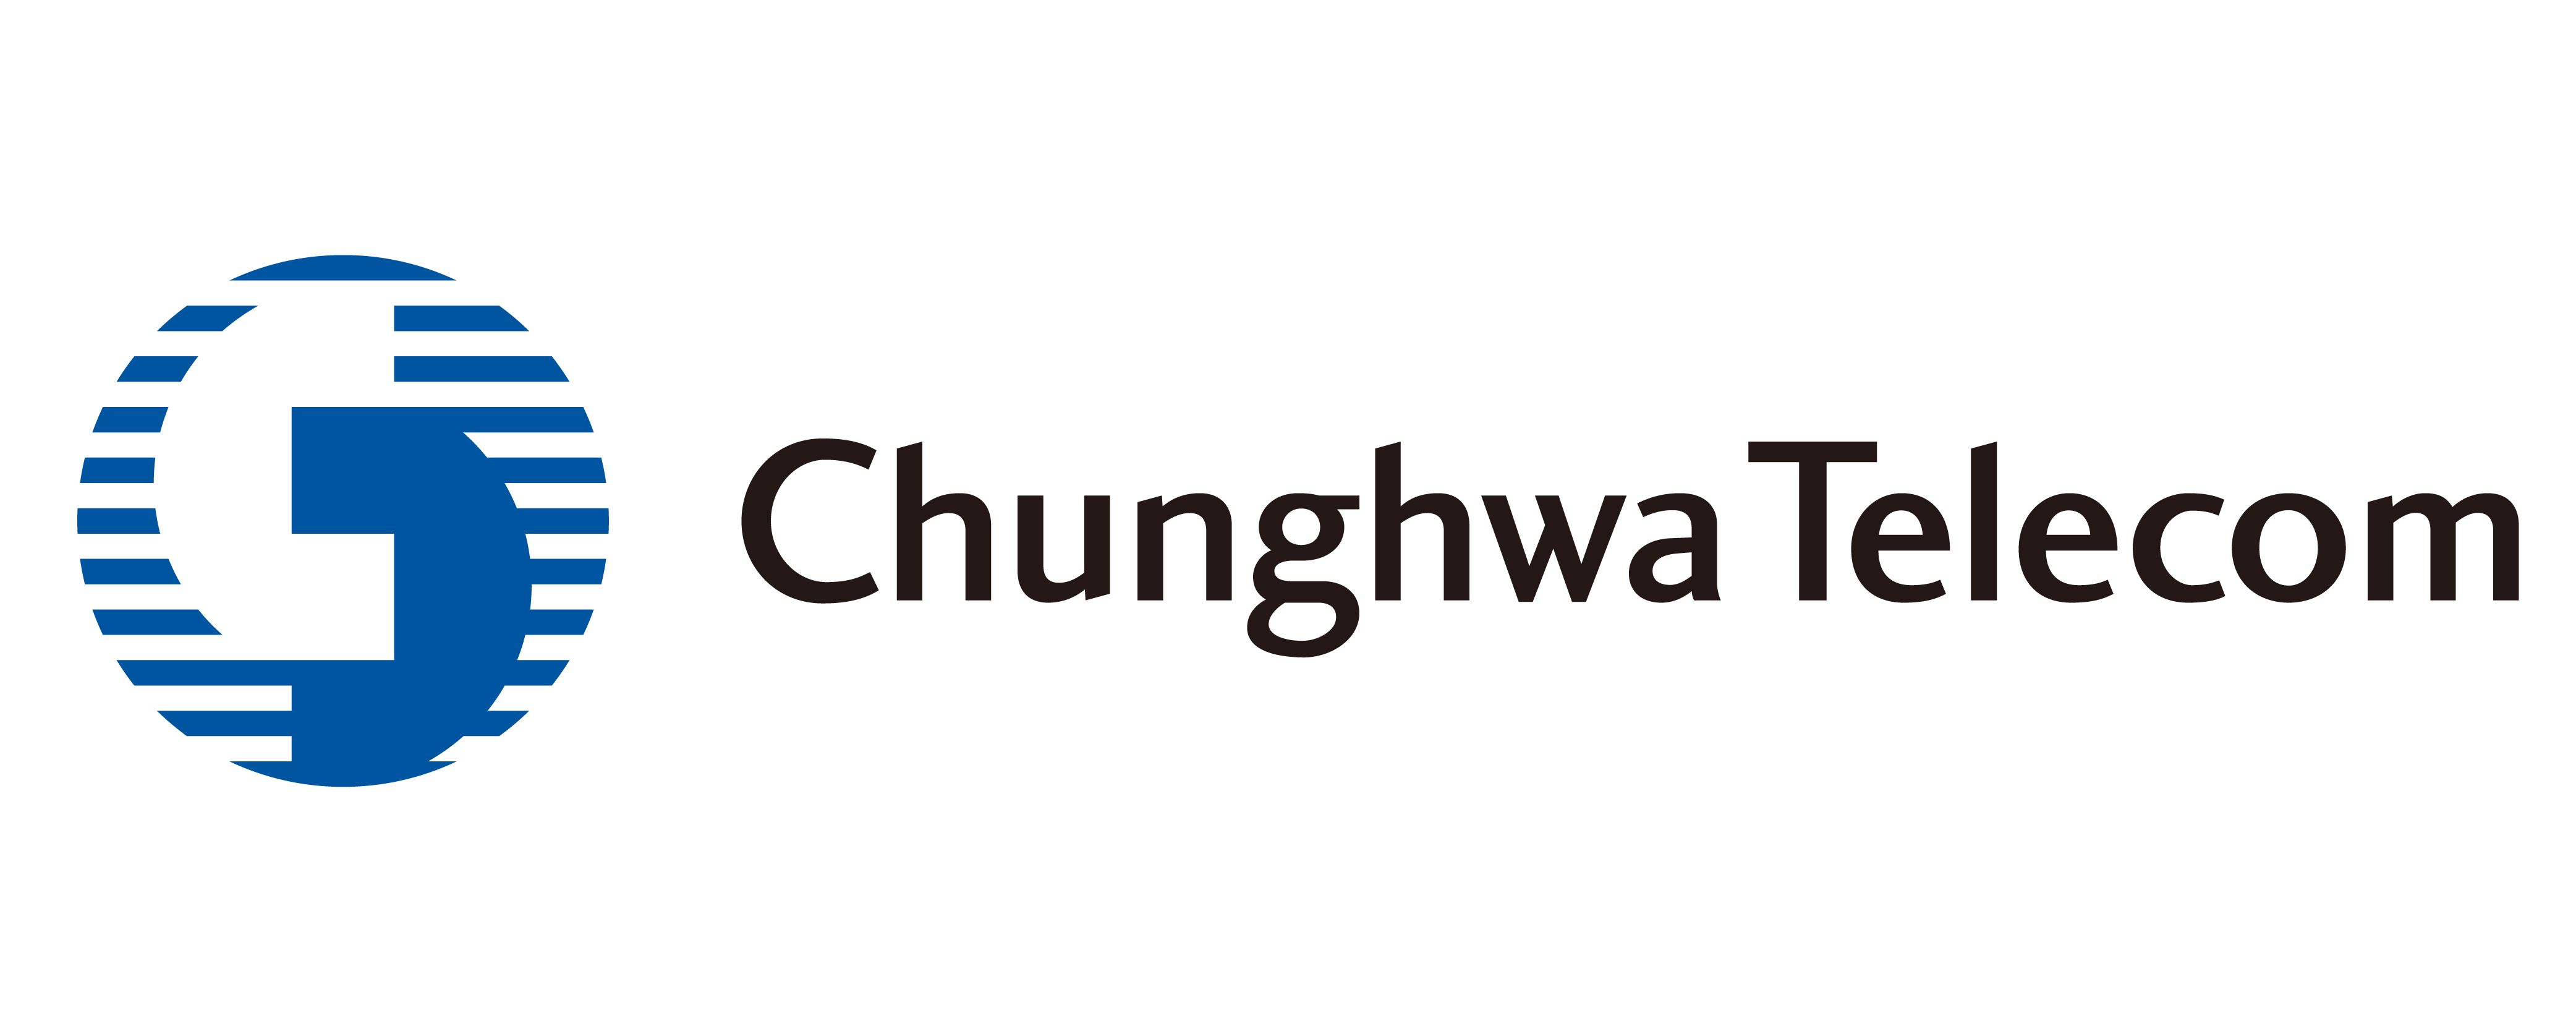 Chunghwa Telecom Co